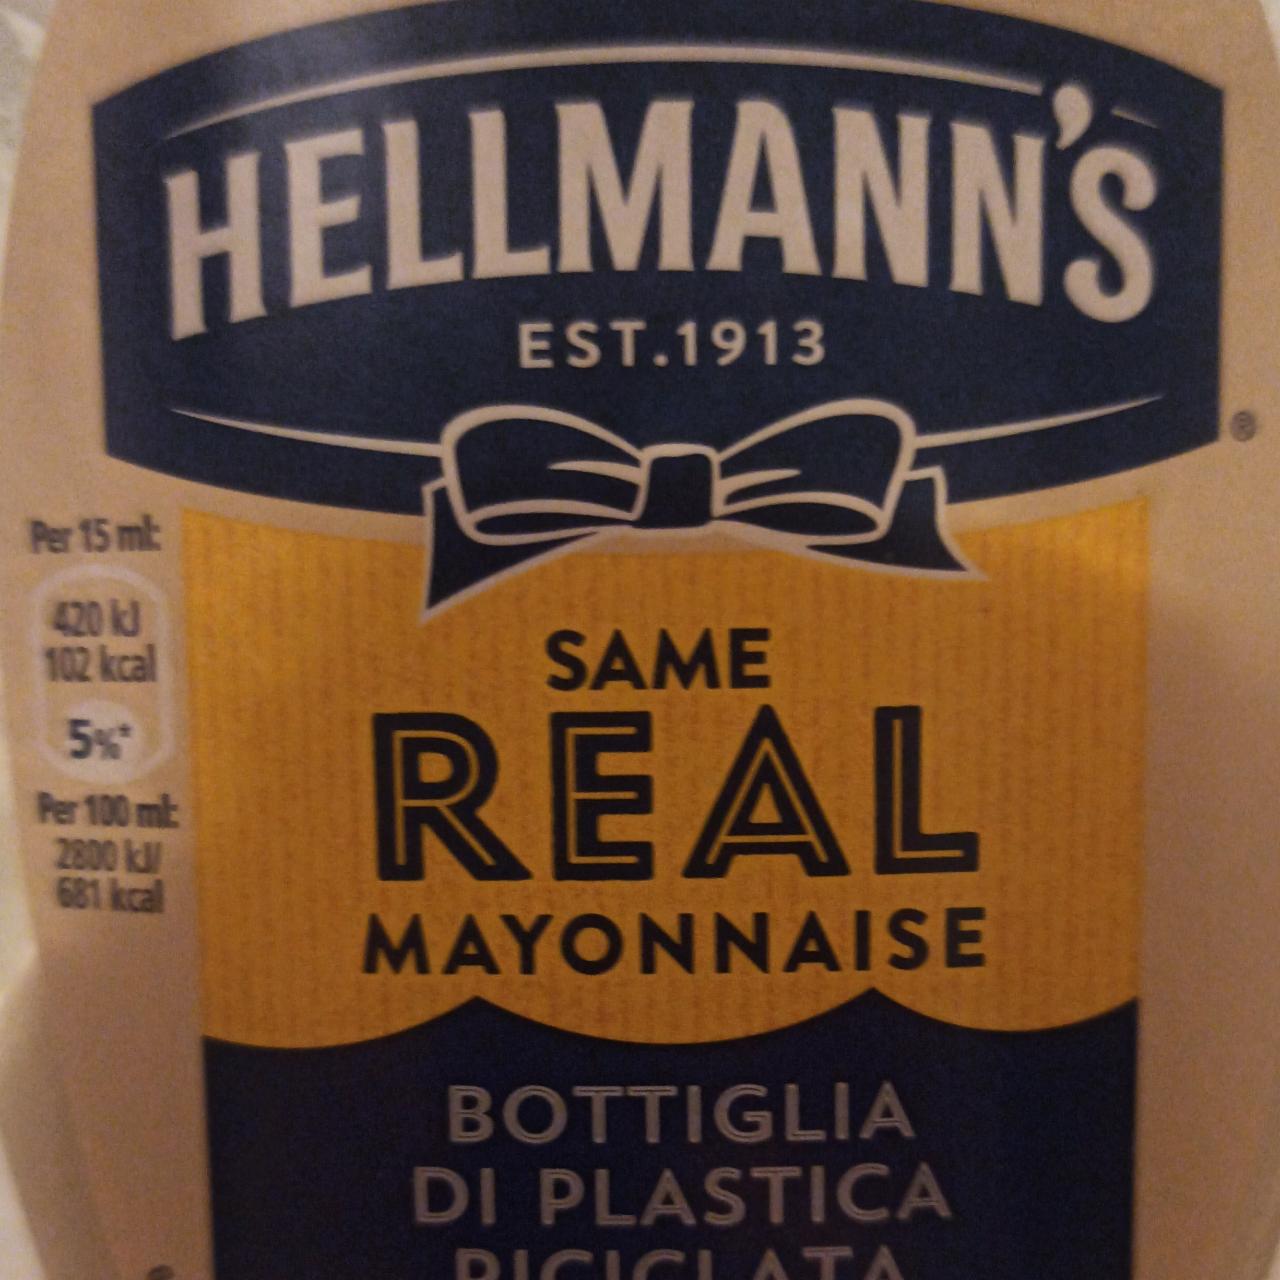 Zdjęcia - Same Real mayonnaise Helmann's